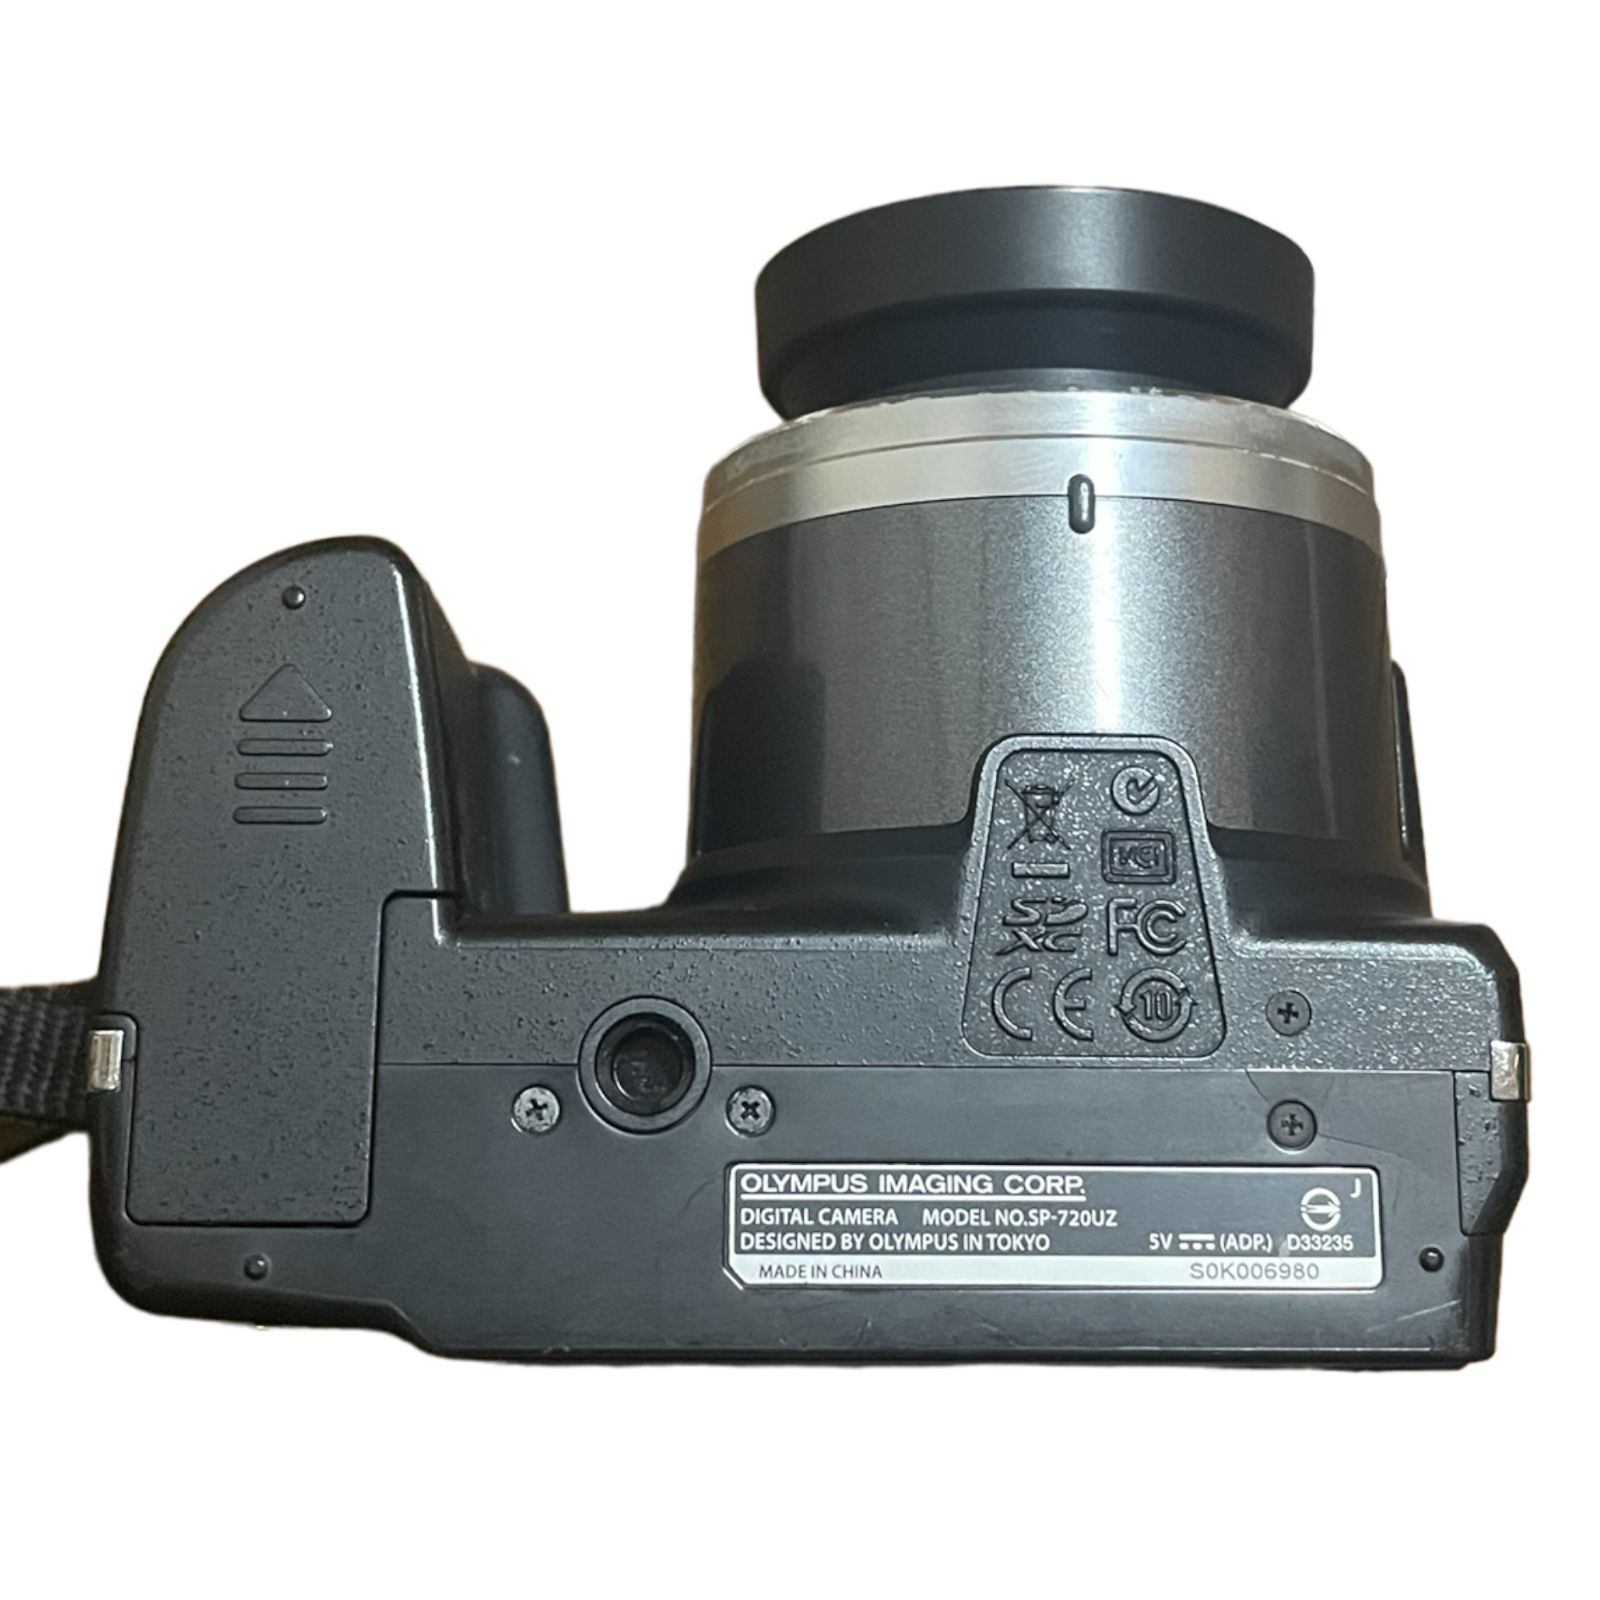 OLYMPUS オリンパス SP-720UZ コンパクトデジタルカメラ